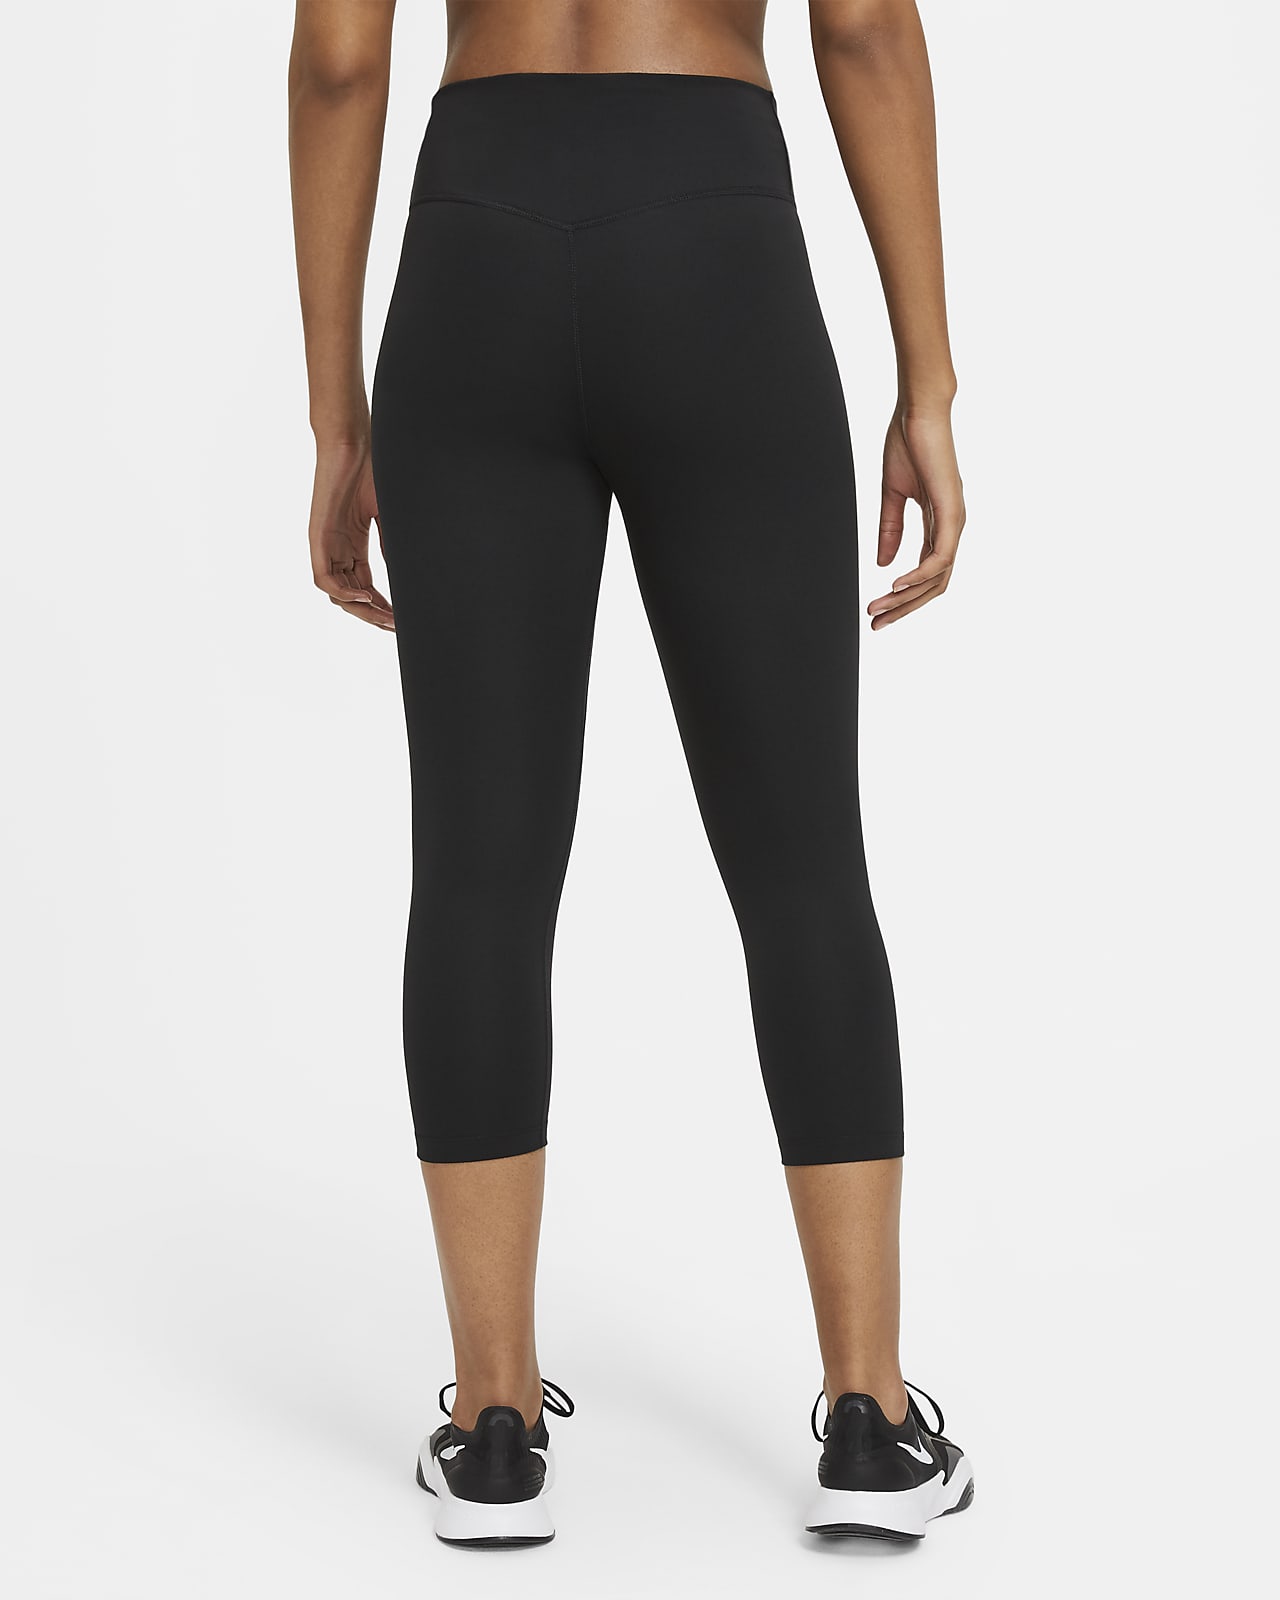 Nike pro womens grey capri leggings size Medium - beyond exchange